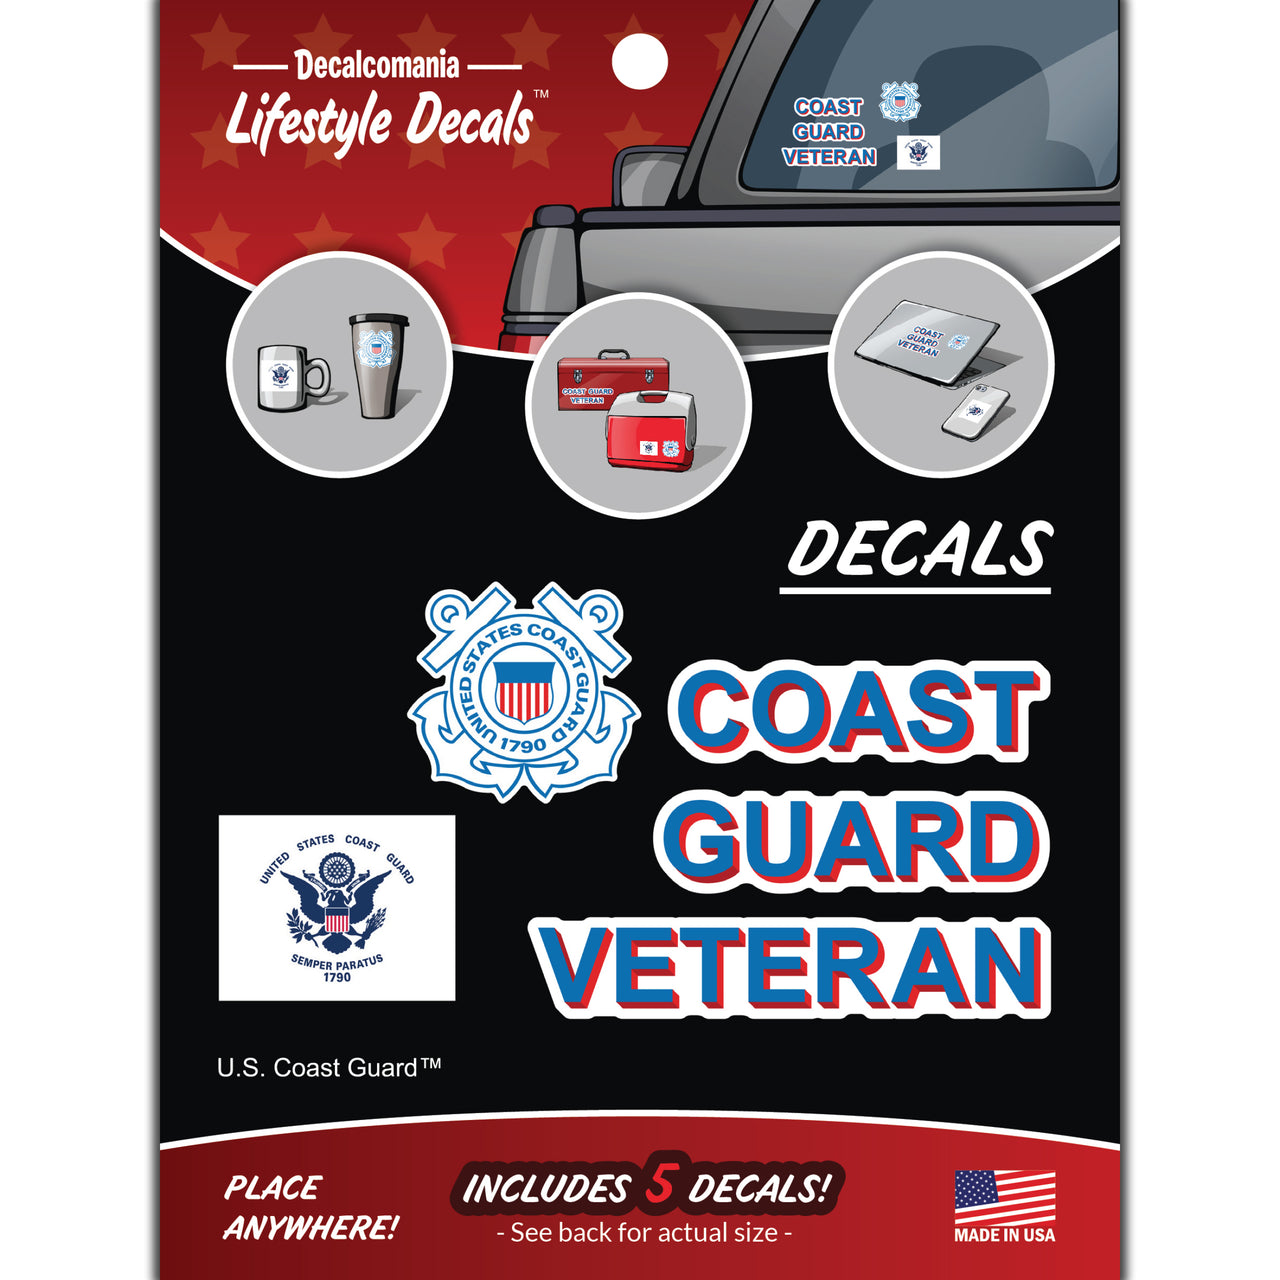 Coast Guard Veteran